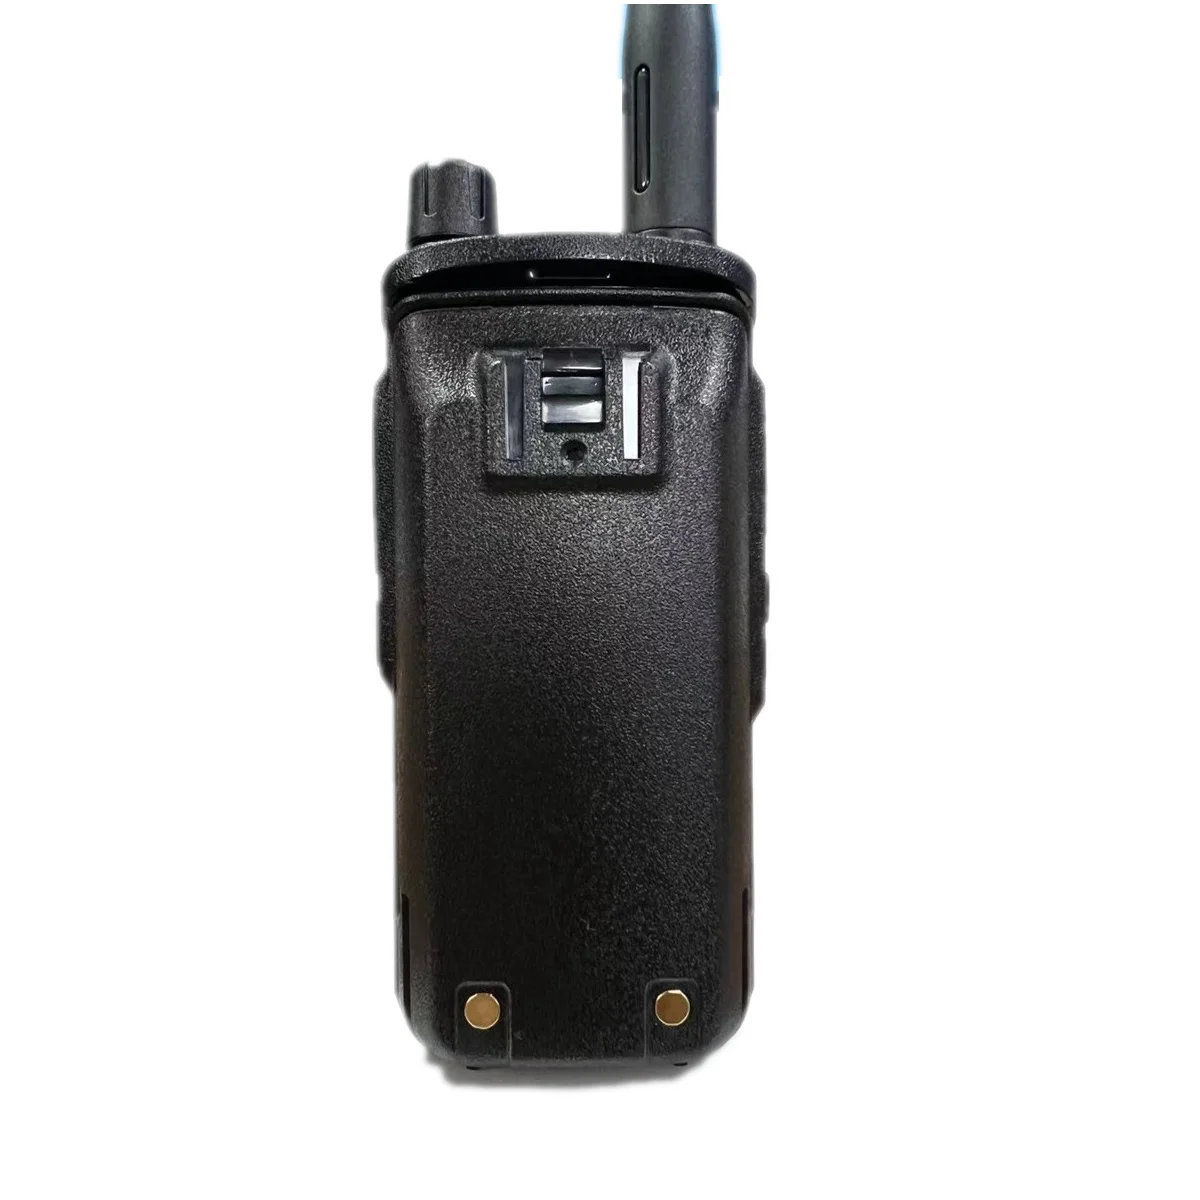 TYT MD750 Двусторонняя радиосвязь DMR и аналоговые двухдиапазонные QT DQT Scrambler Шифрование Экранная клавиатура 5 Вт Двойной временной интервал HAM Интерфон - 3